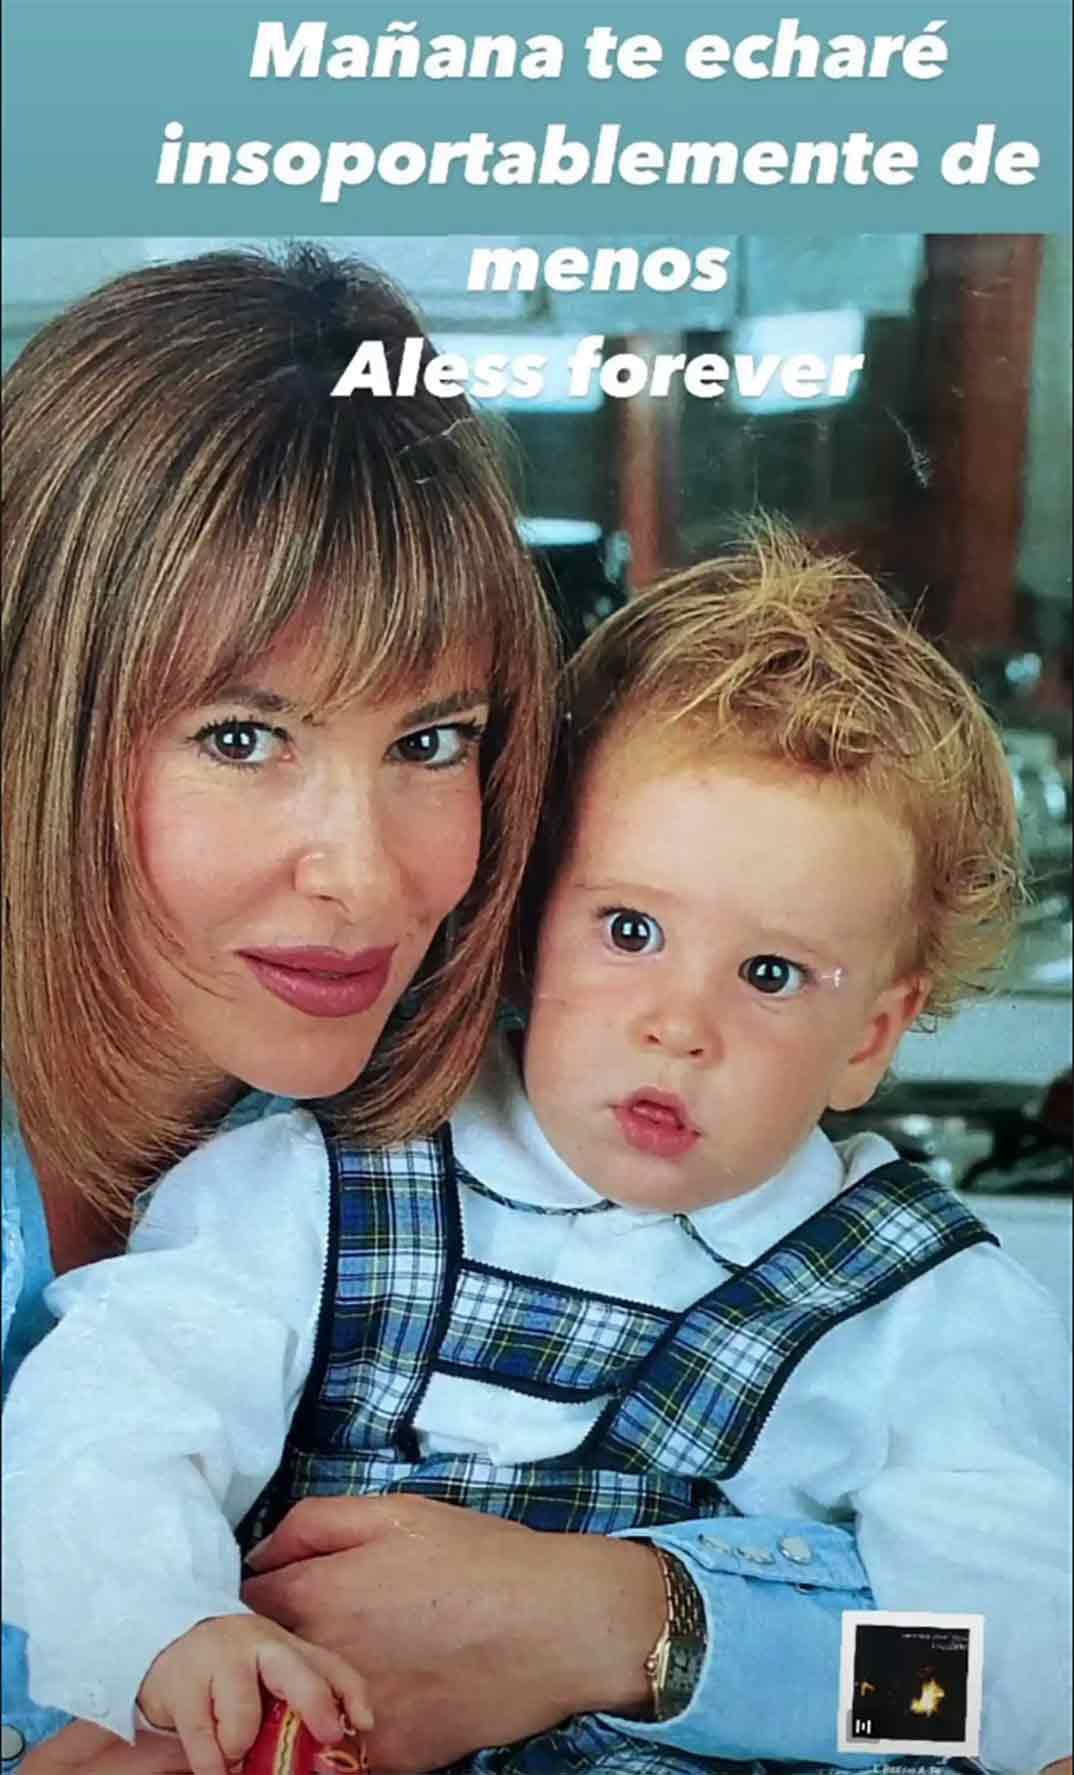 Ana Obregón con su hijo Alex © Stories/ Instagram